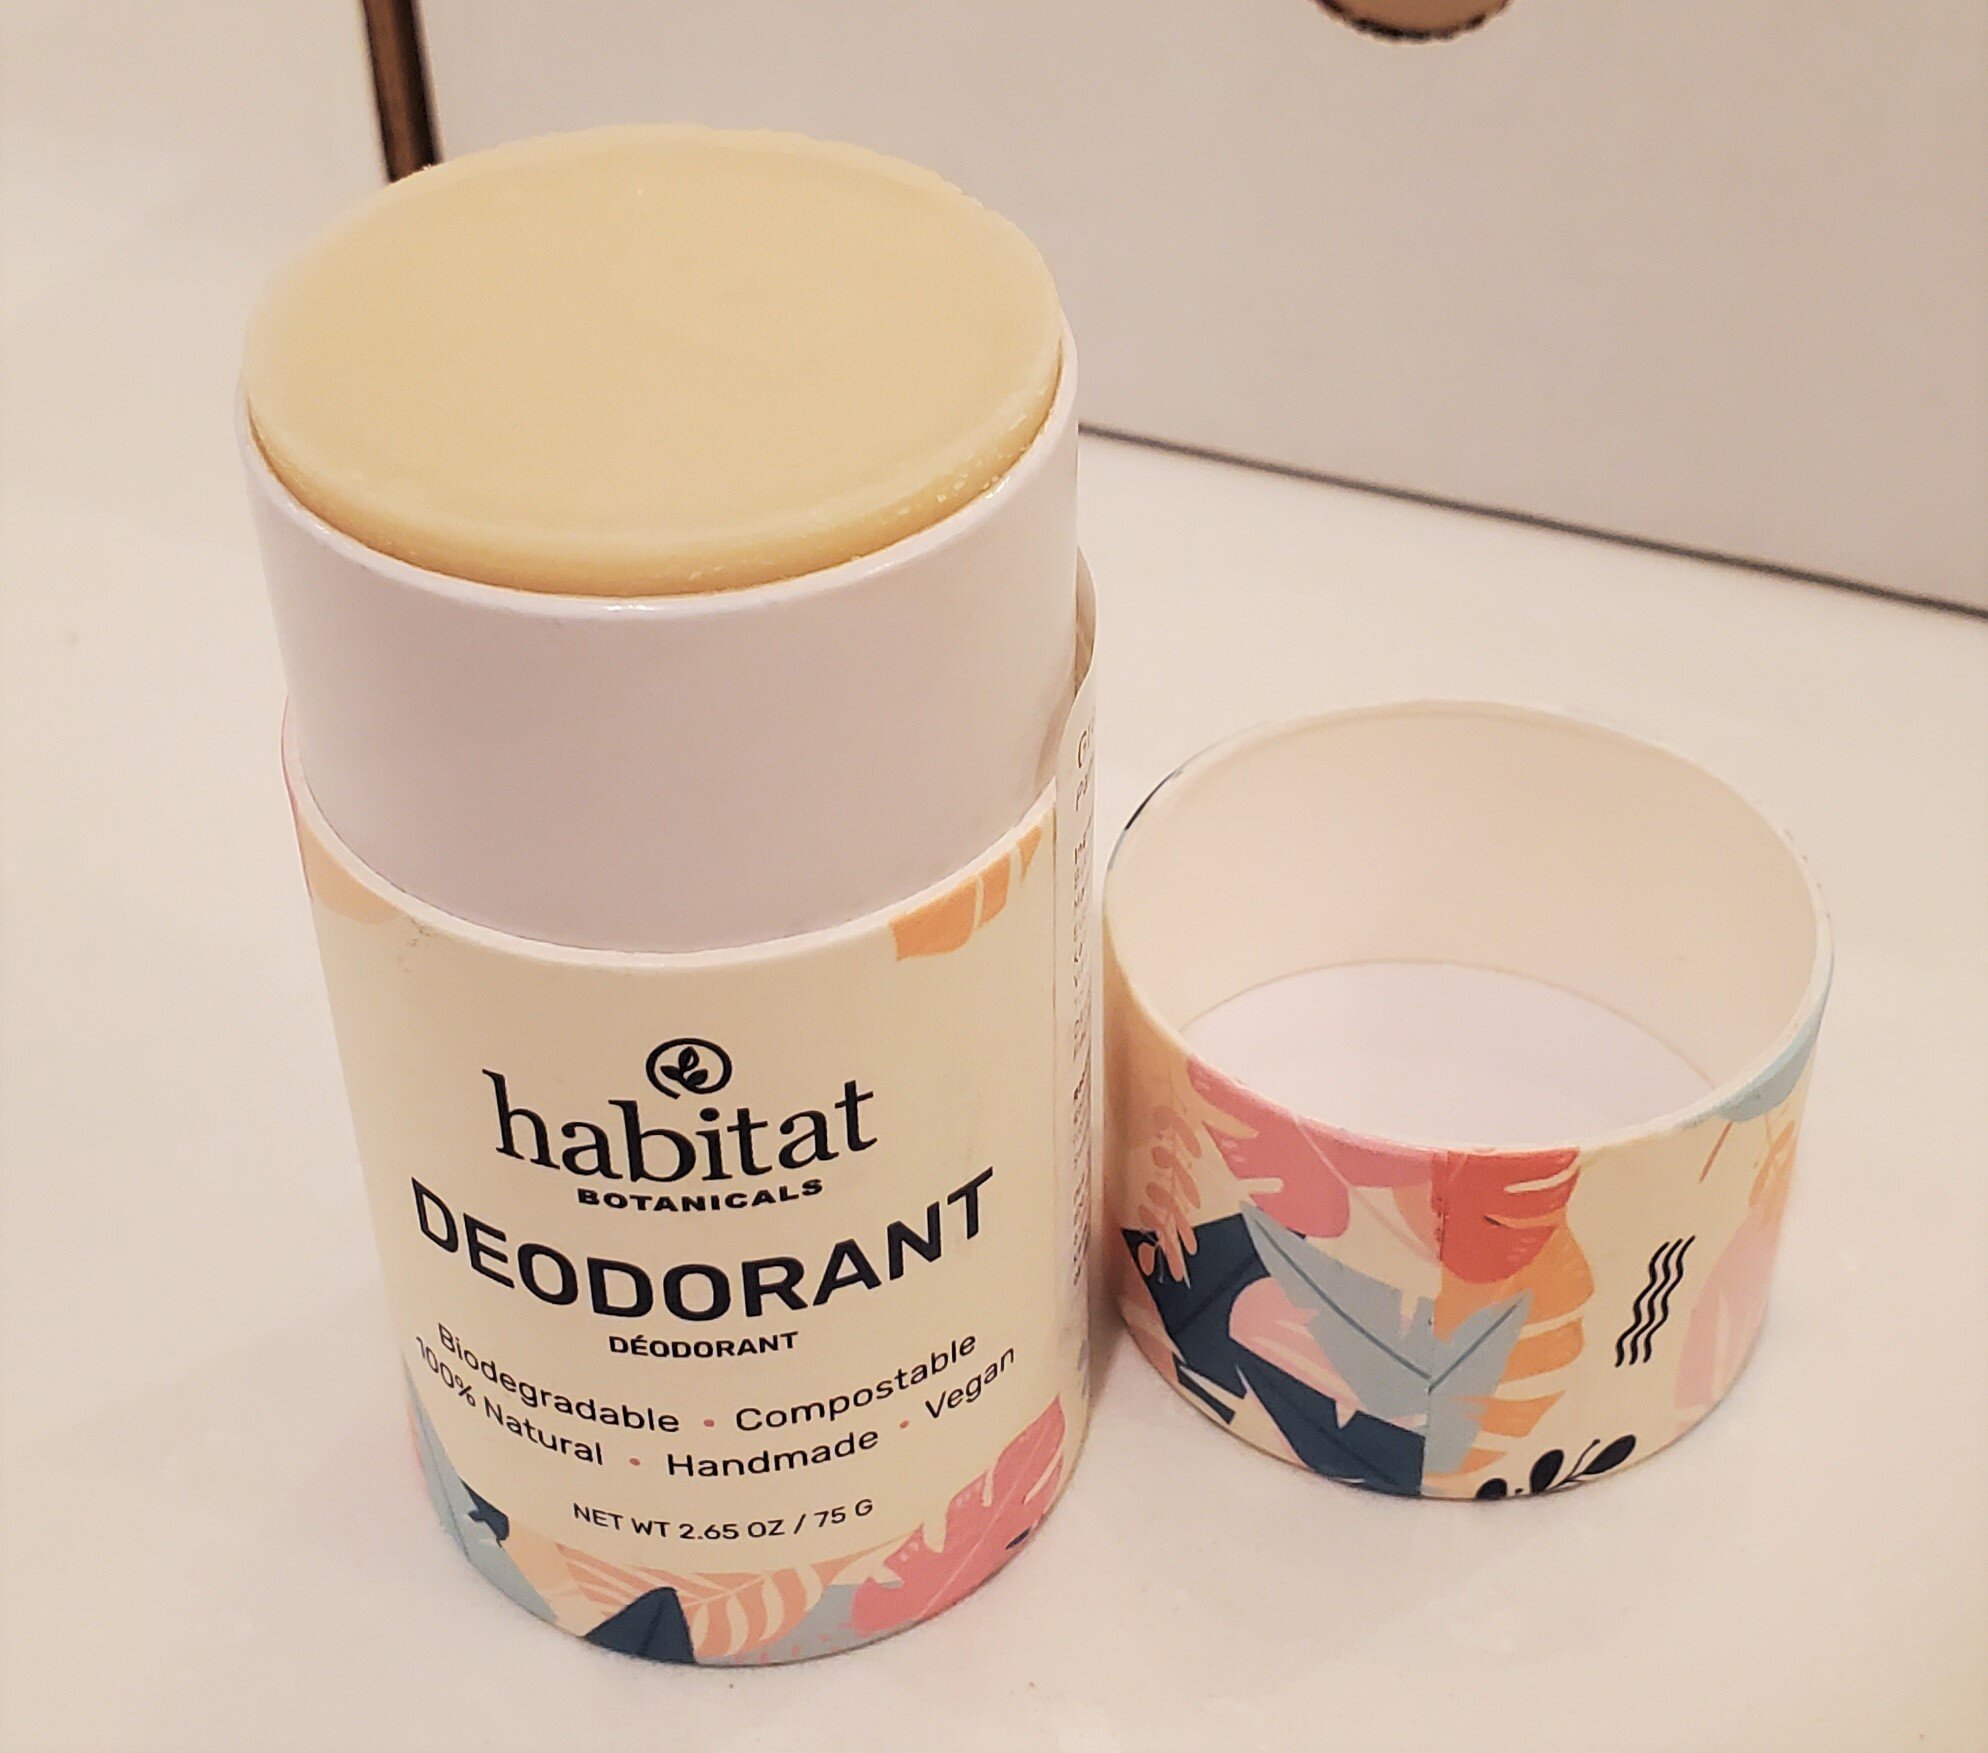 Habitat Deodorant